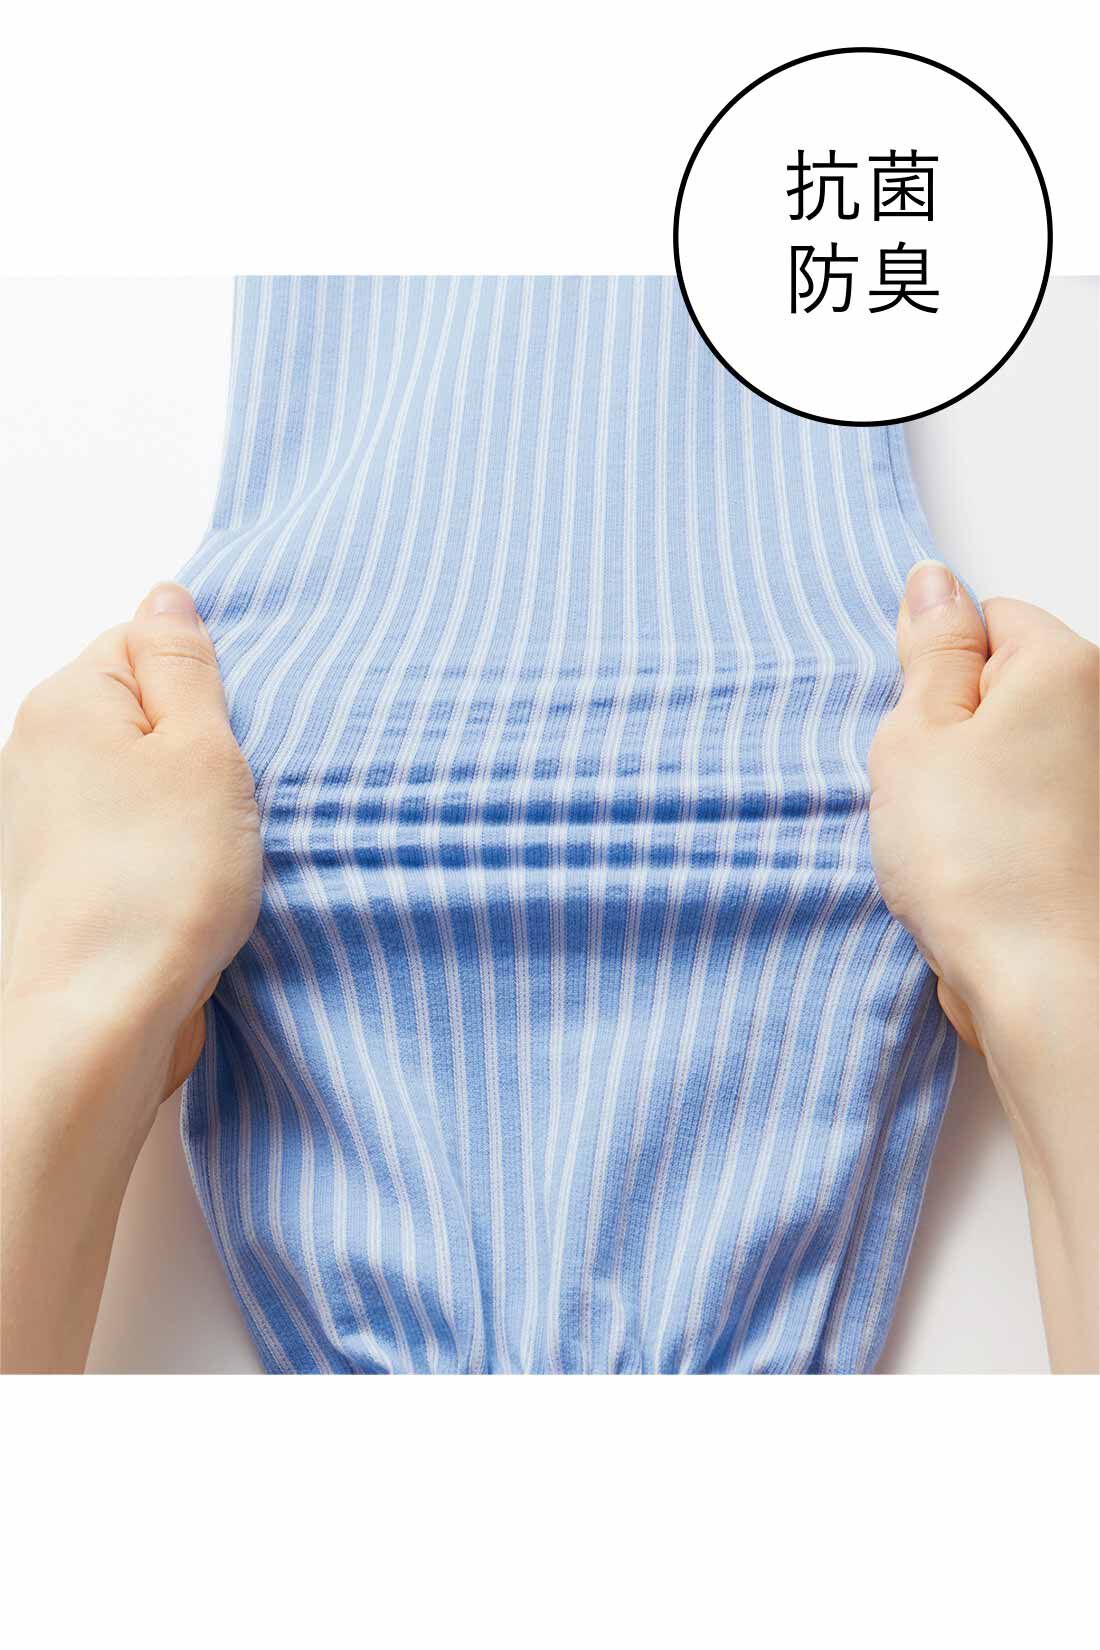 Real Stock|IEDIT[イディット]　抗菌防臭がうれしい きちんとシャツ見えして伸びやかな 美ノビシャツブラウス〈ブルー〉|綿混のカットソー素材だから着心地らくちん。しわになりにくく、洗濯機で洗えてイージーケアがうれしい。